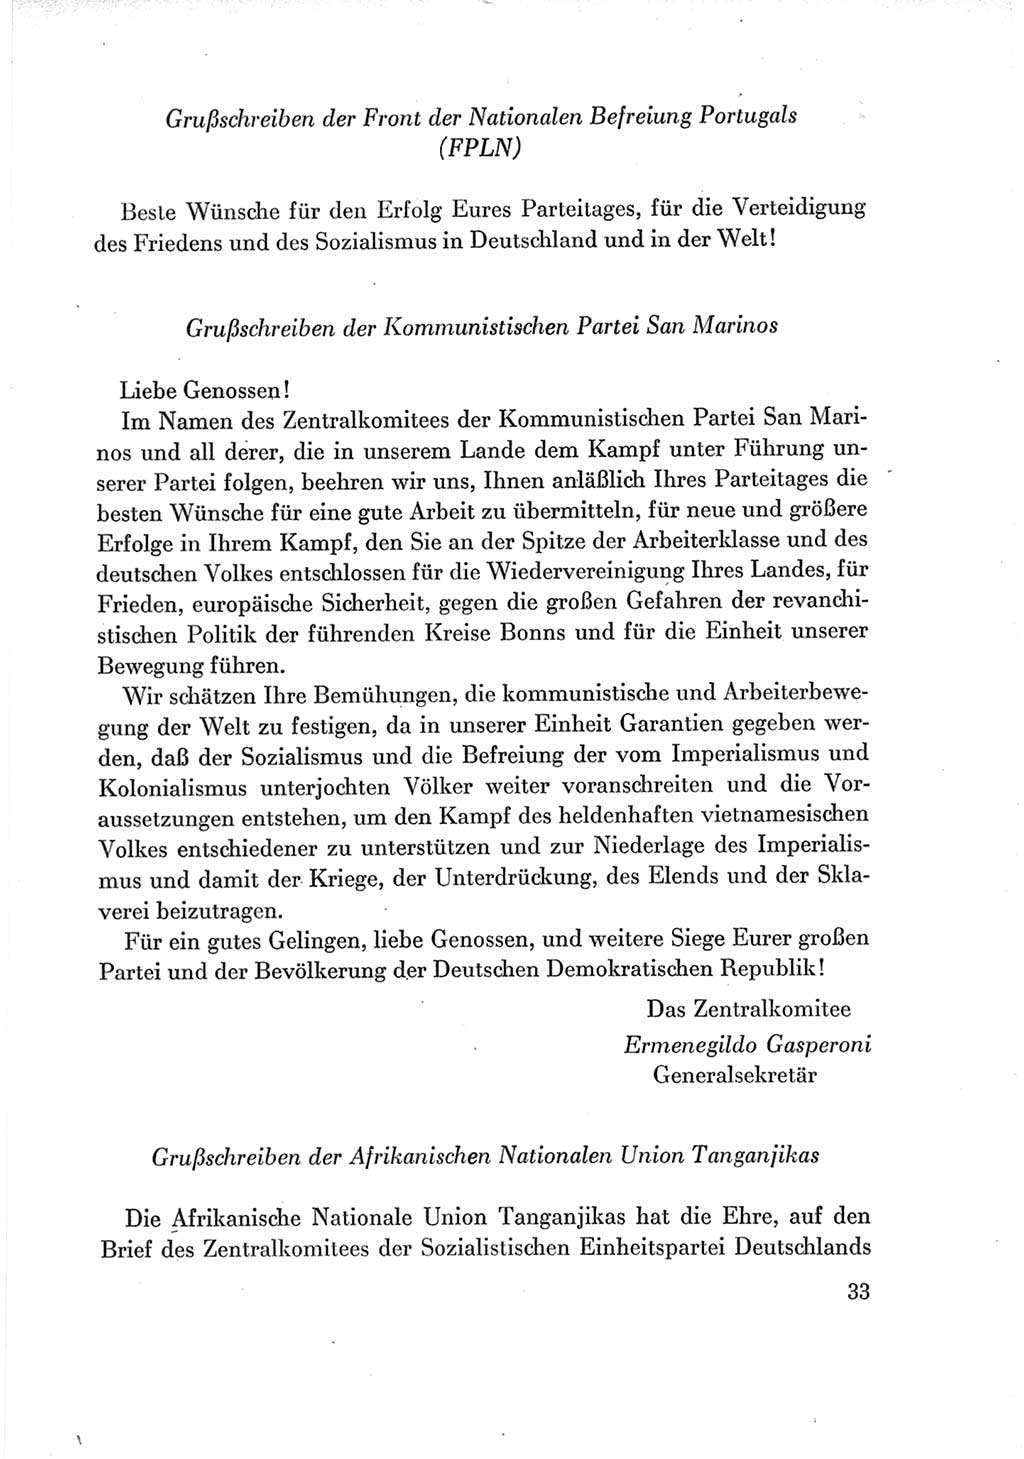 Protokoll der Verhandlungen des Ⅶ. Parteitages der Sozialistischen Einheitspartei Deutschlands (SED) [Deutsche Demokratische Republik (DDR)] 1967, Band Ⅲ, Seite 33 (Prot. Verh. Ⅶ. PT SED DDR 1967, Bd. Ⅲ, S. 33)